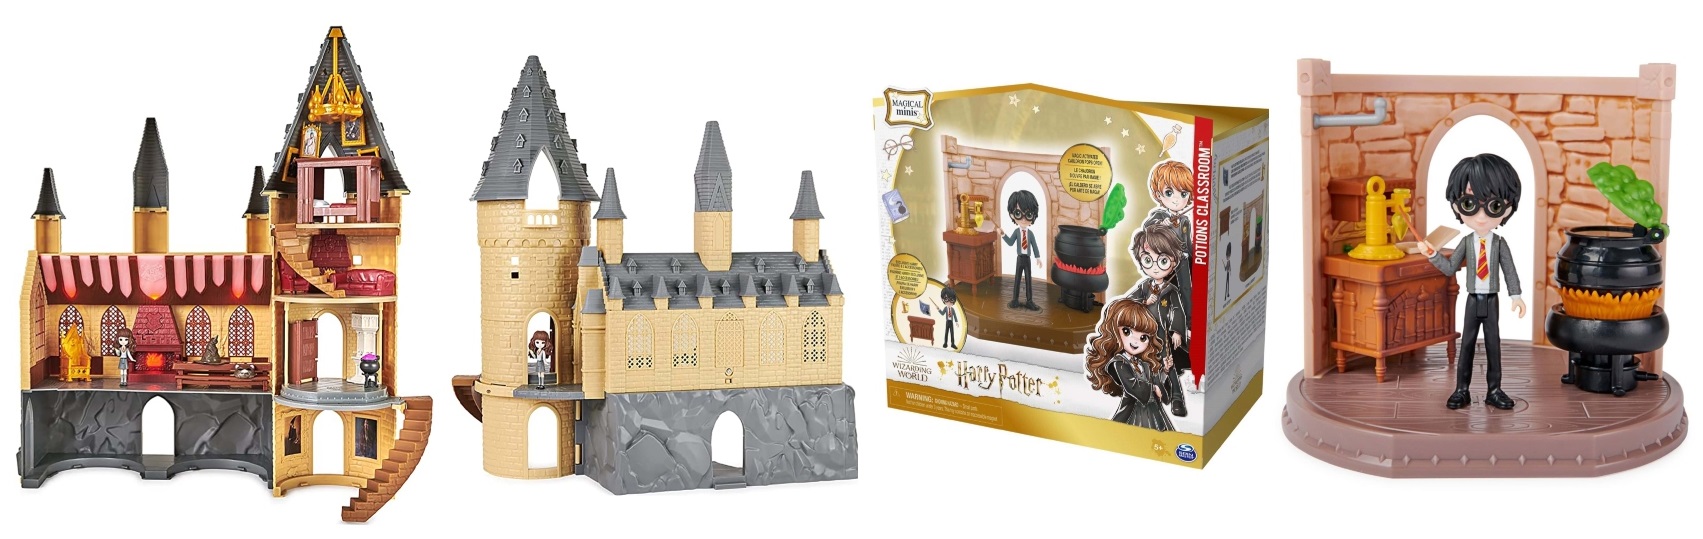 Harry Potter Toy Sets